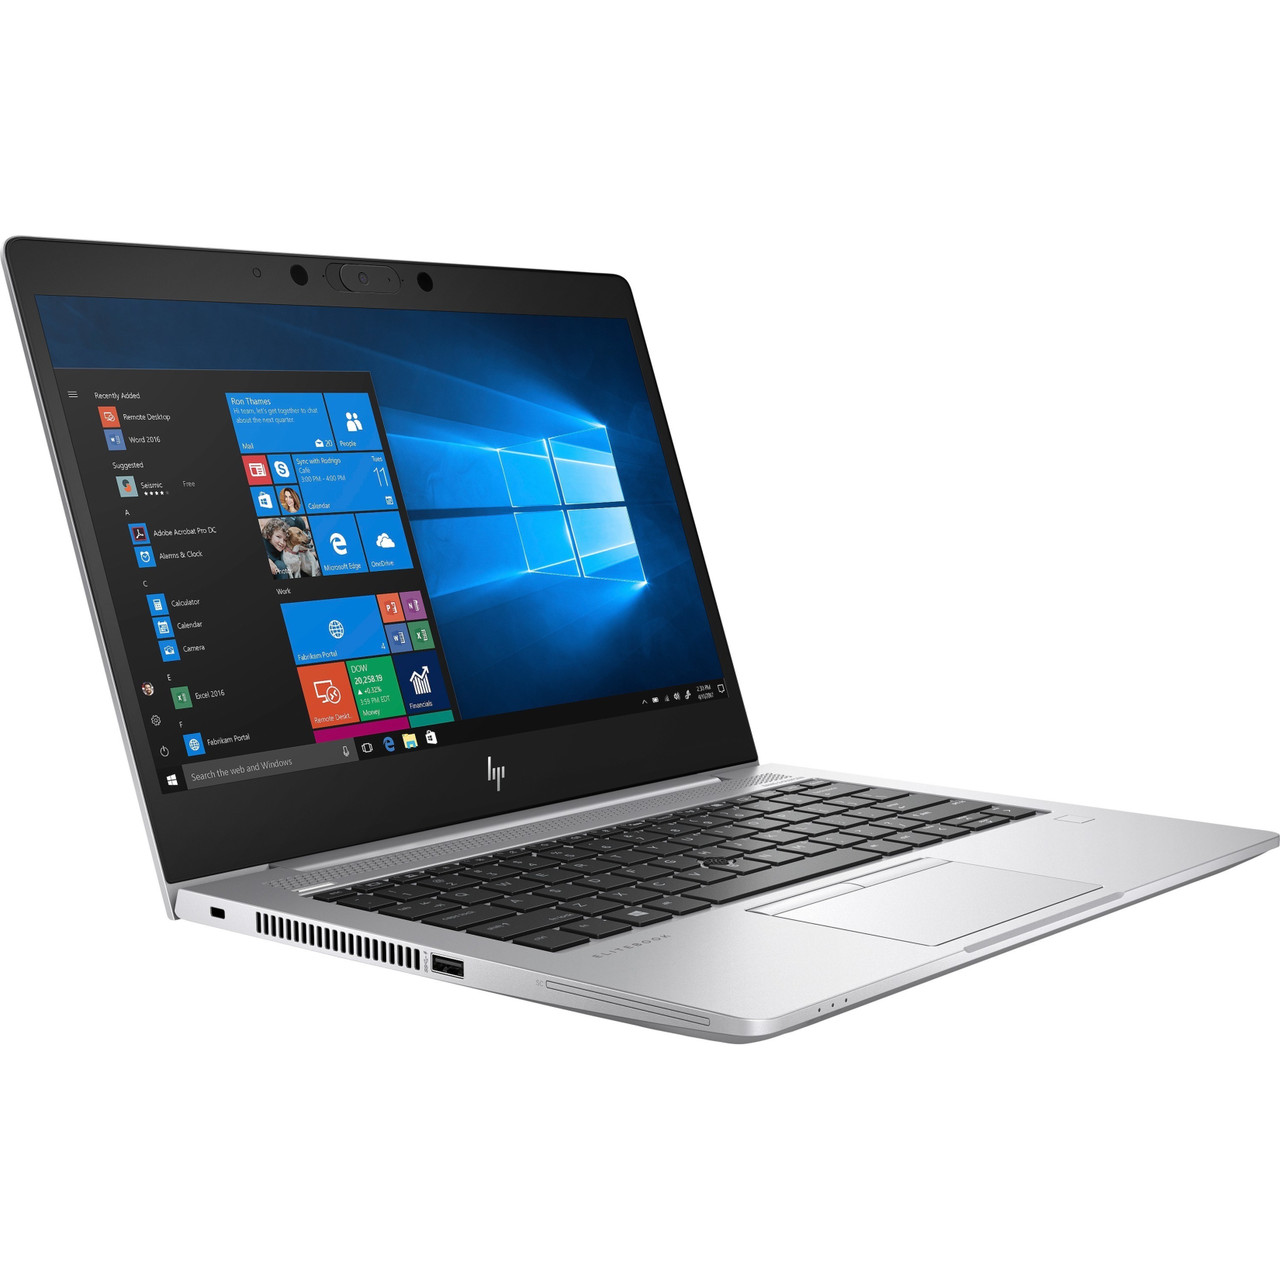 HP EliteBook x360 830 G6 13.3" Touchscreen Convertible 2 in 1 Notebook - 1920 x 1080 - Intel Core i5 8th Gen i5-8365U Quad-core (4 Core) 1.60 GHz - 16 GB Total RAM - 256 GB SSD